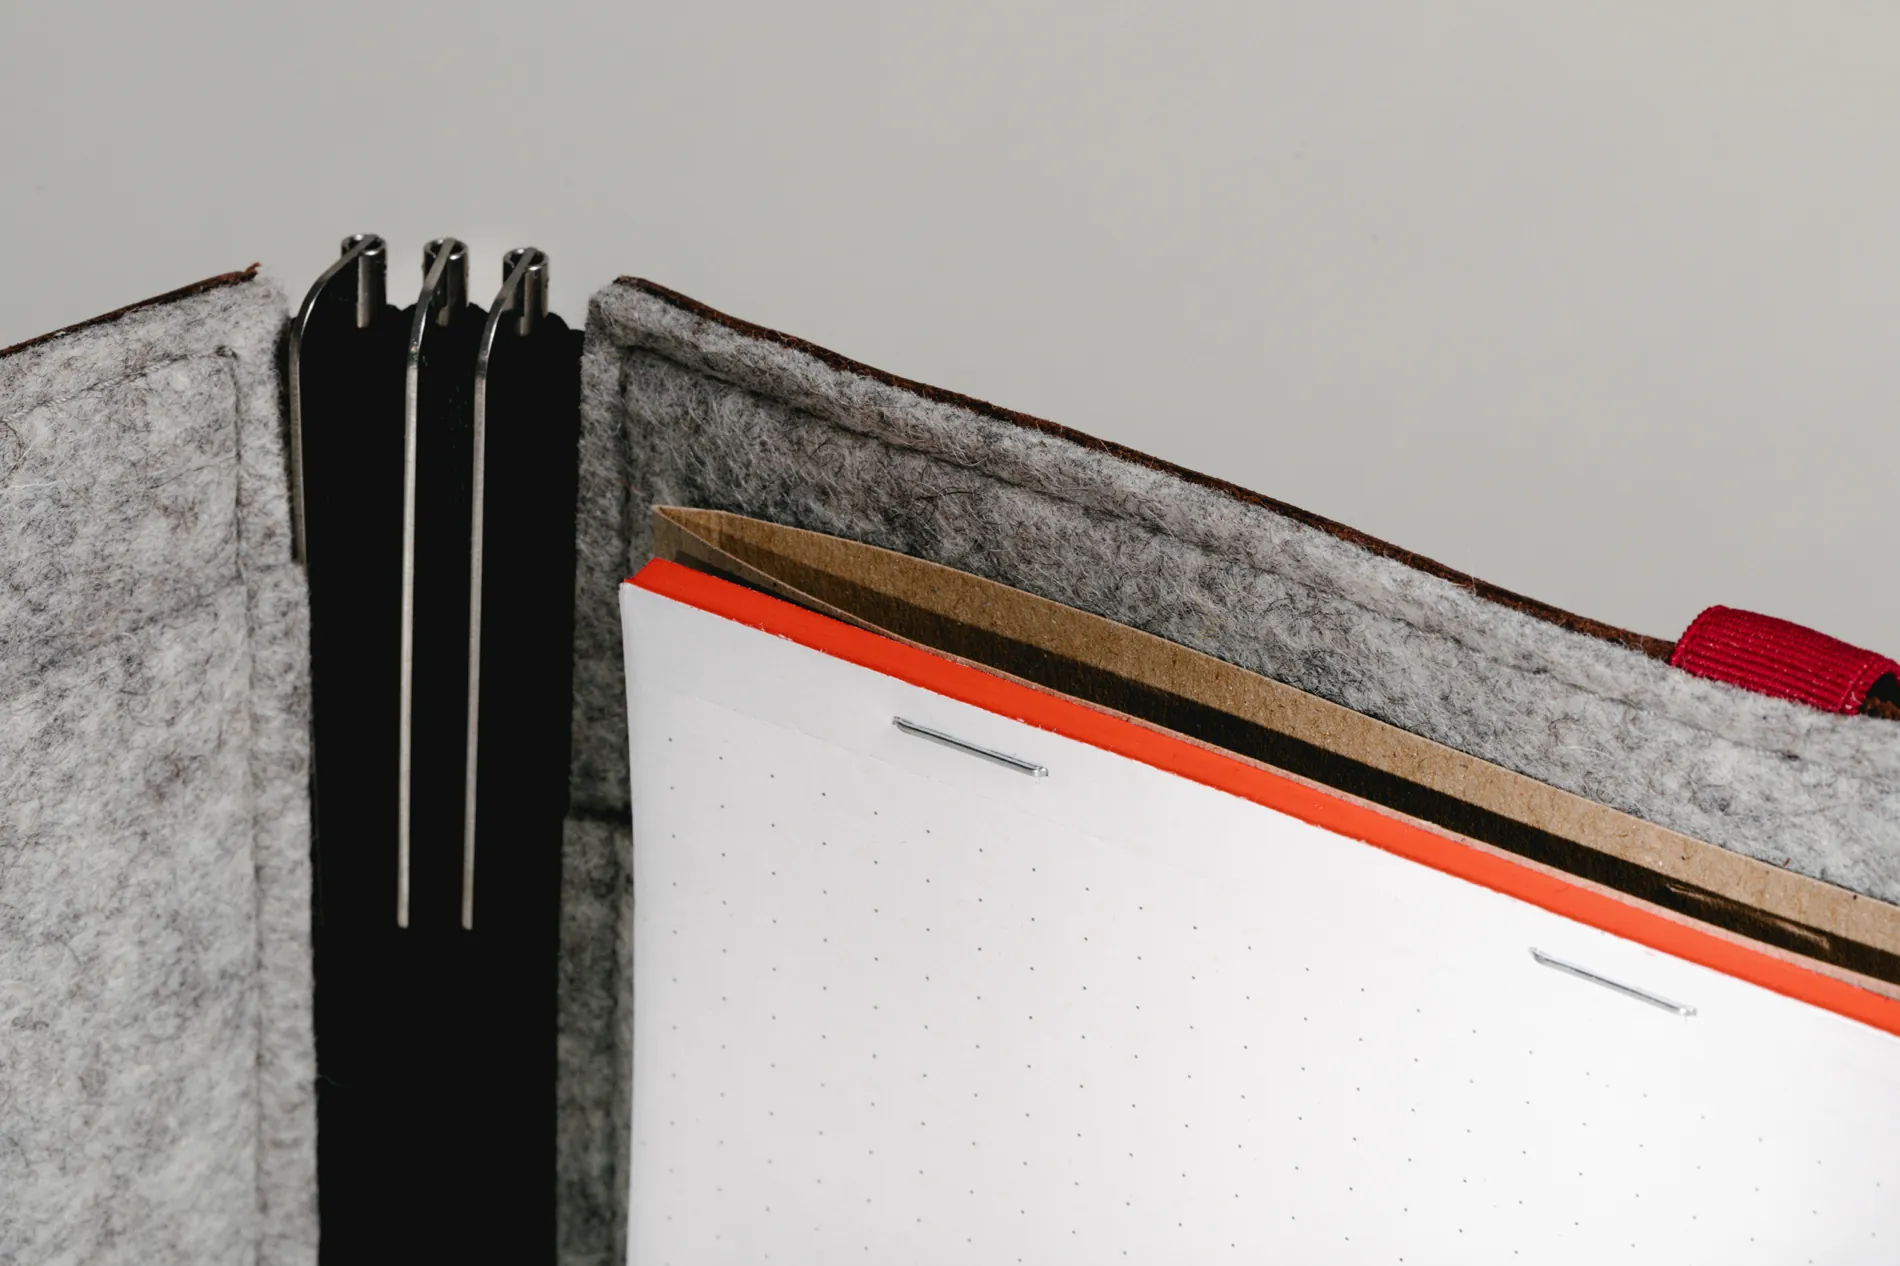 Roterfaden Taschenbegleiter Notebook A5 with Dot Grid - Inside View